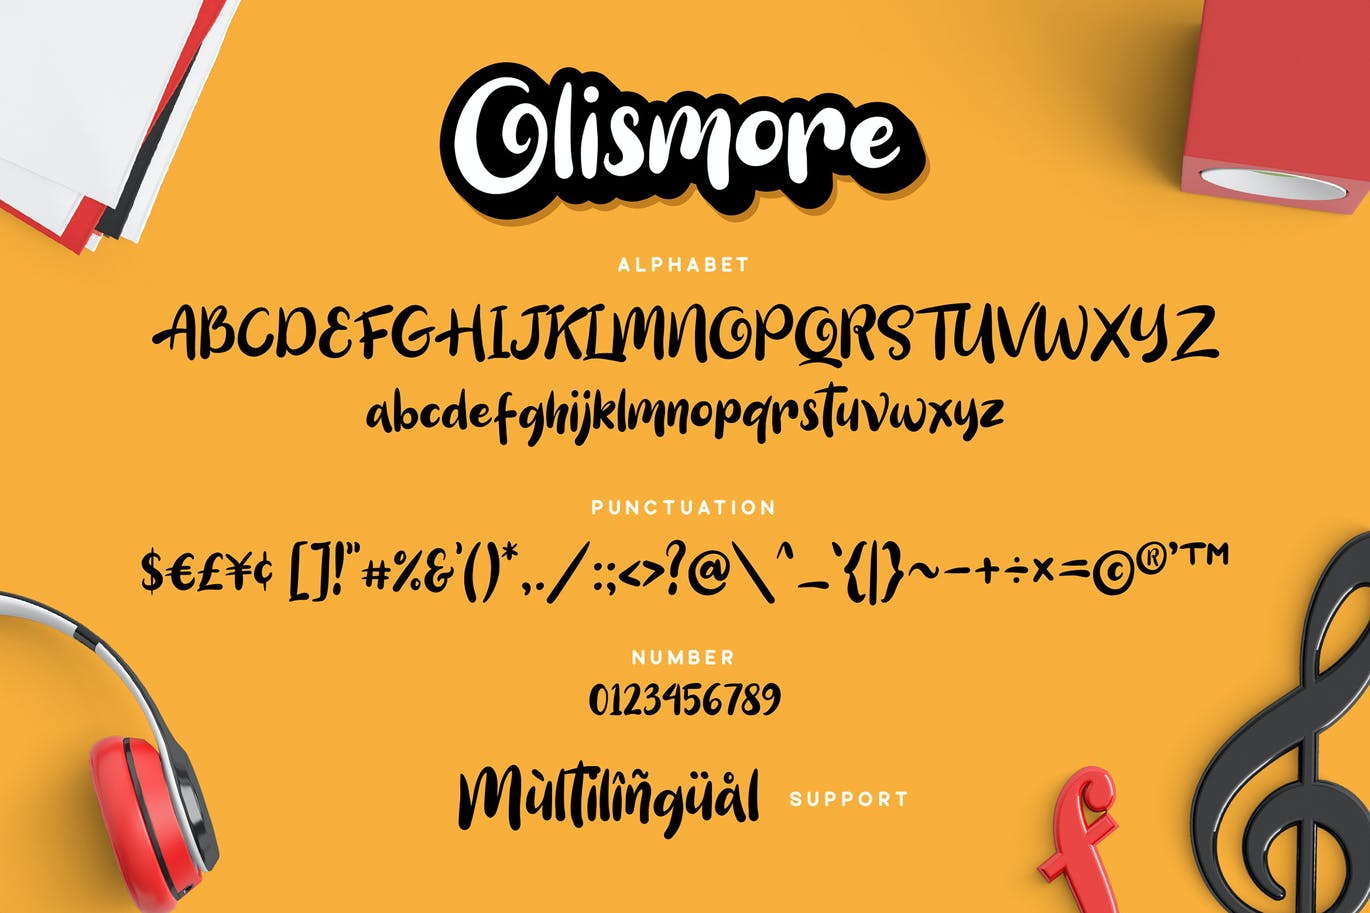 独特的手绘字体素材 Olismore Font 设计素材 第6张